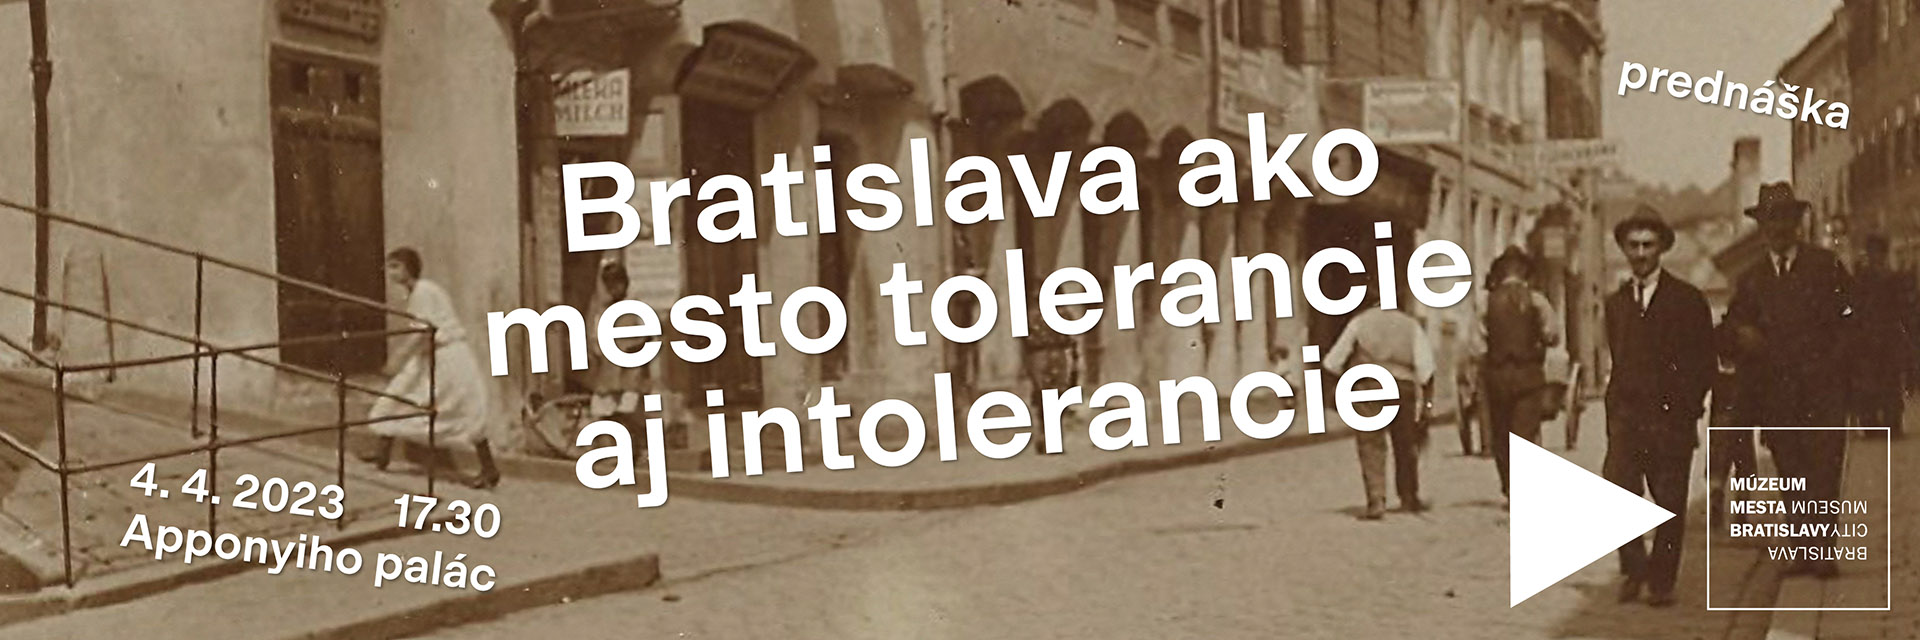 Bratislava ako mesto tolerancie aj intolerancie